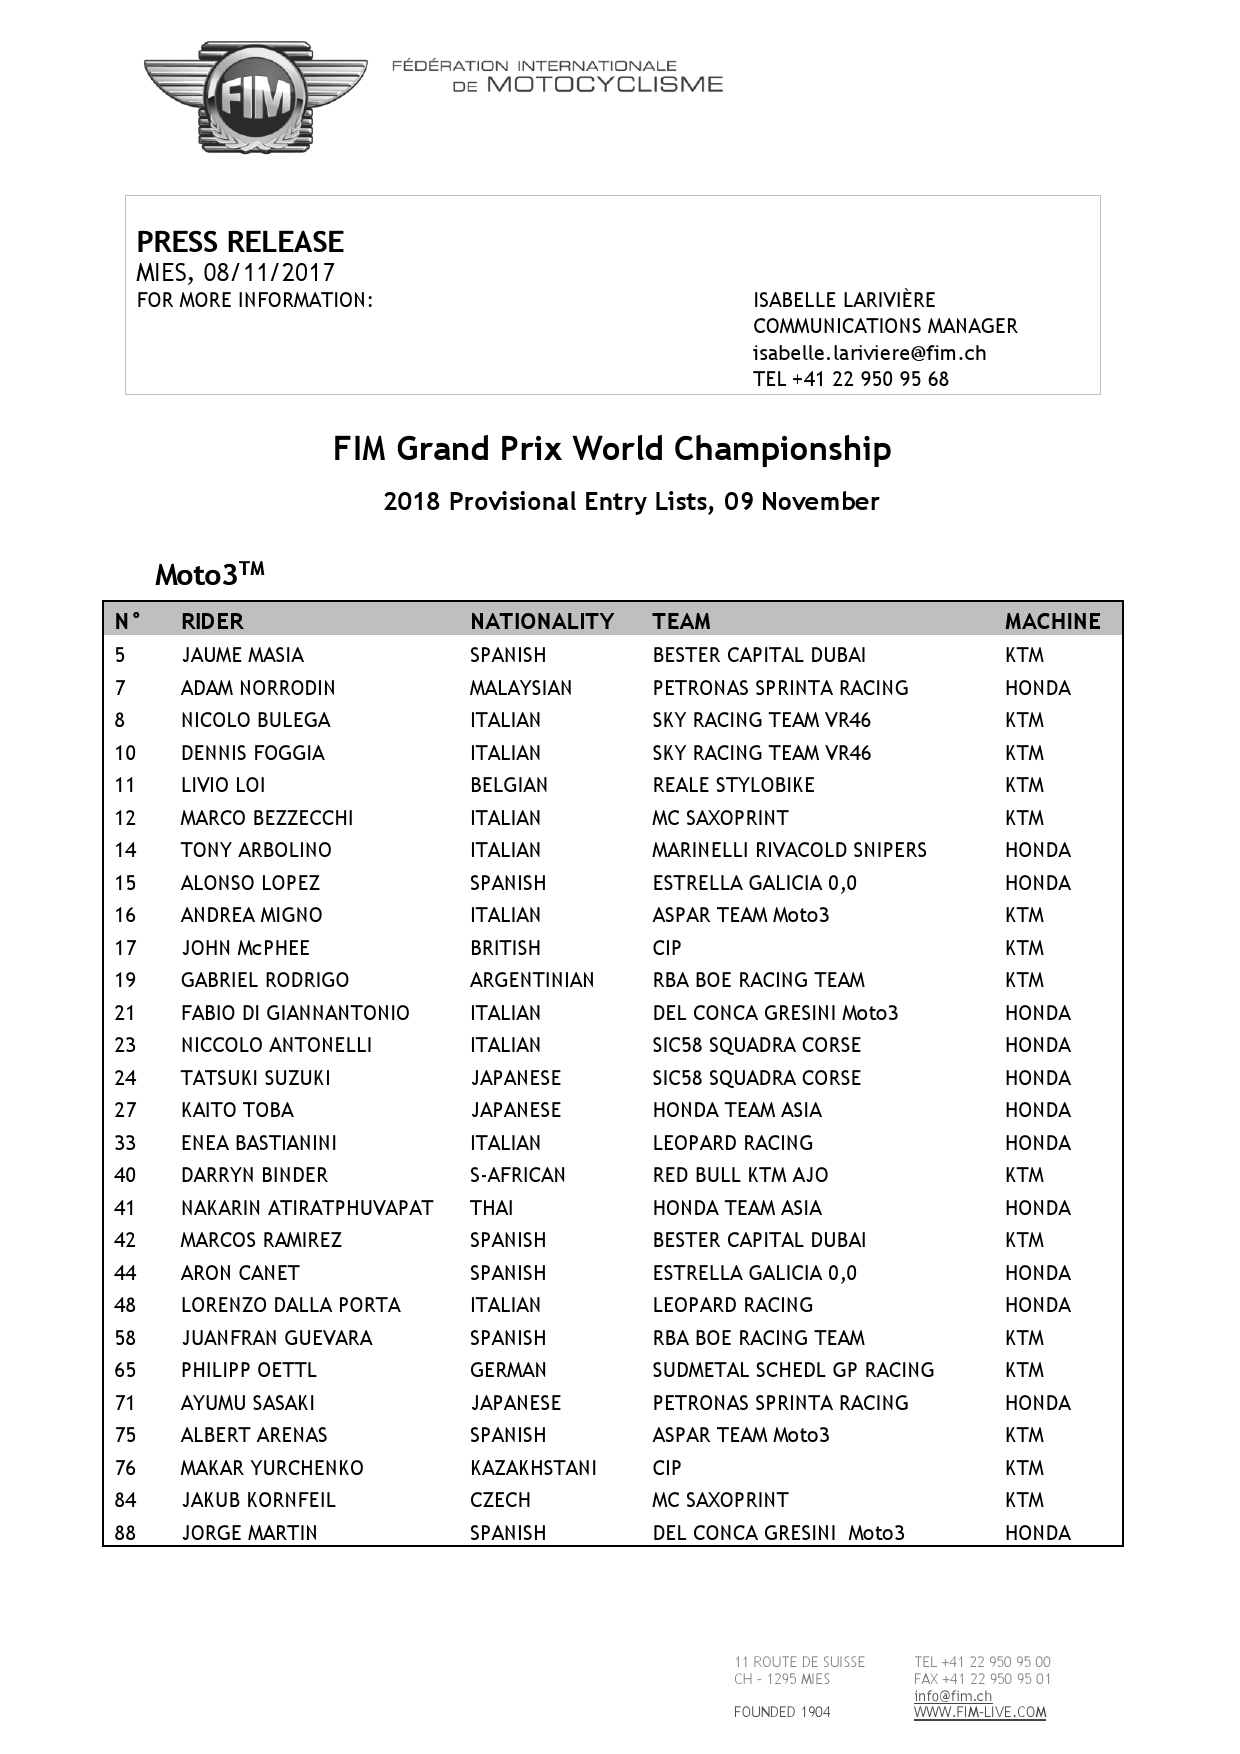 Список пилотов и стартовые номера в чемпионате мира по Moto3 2018 года